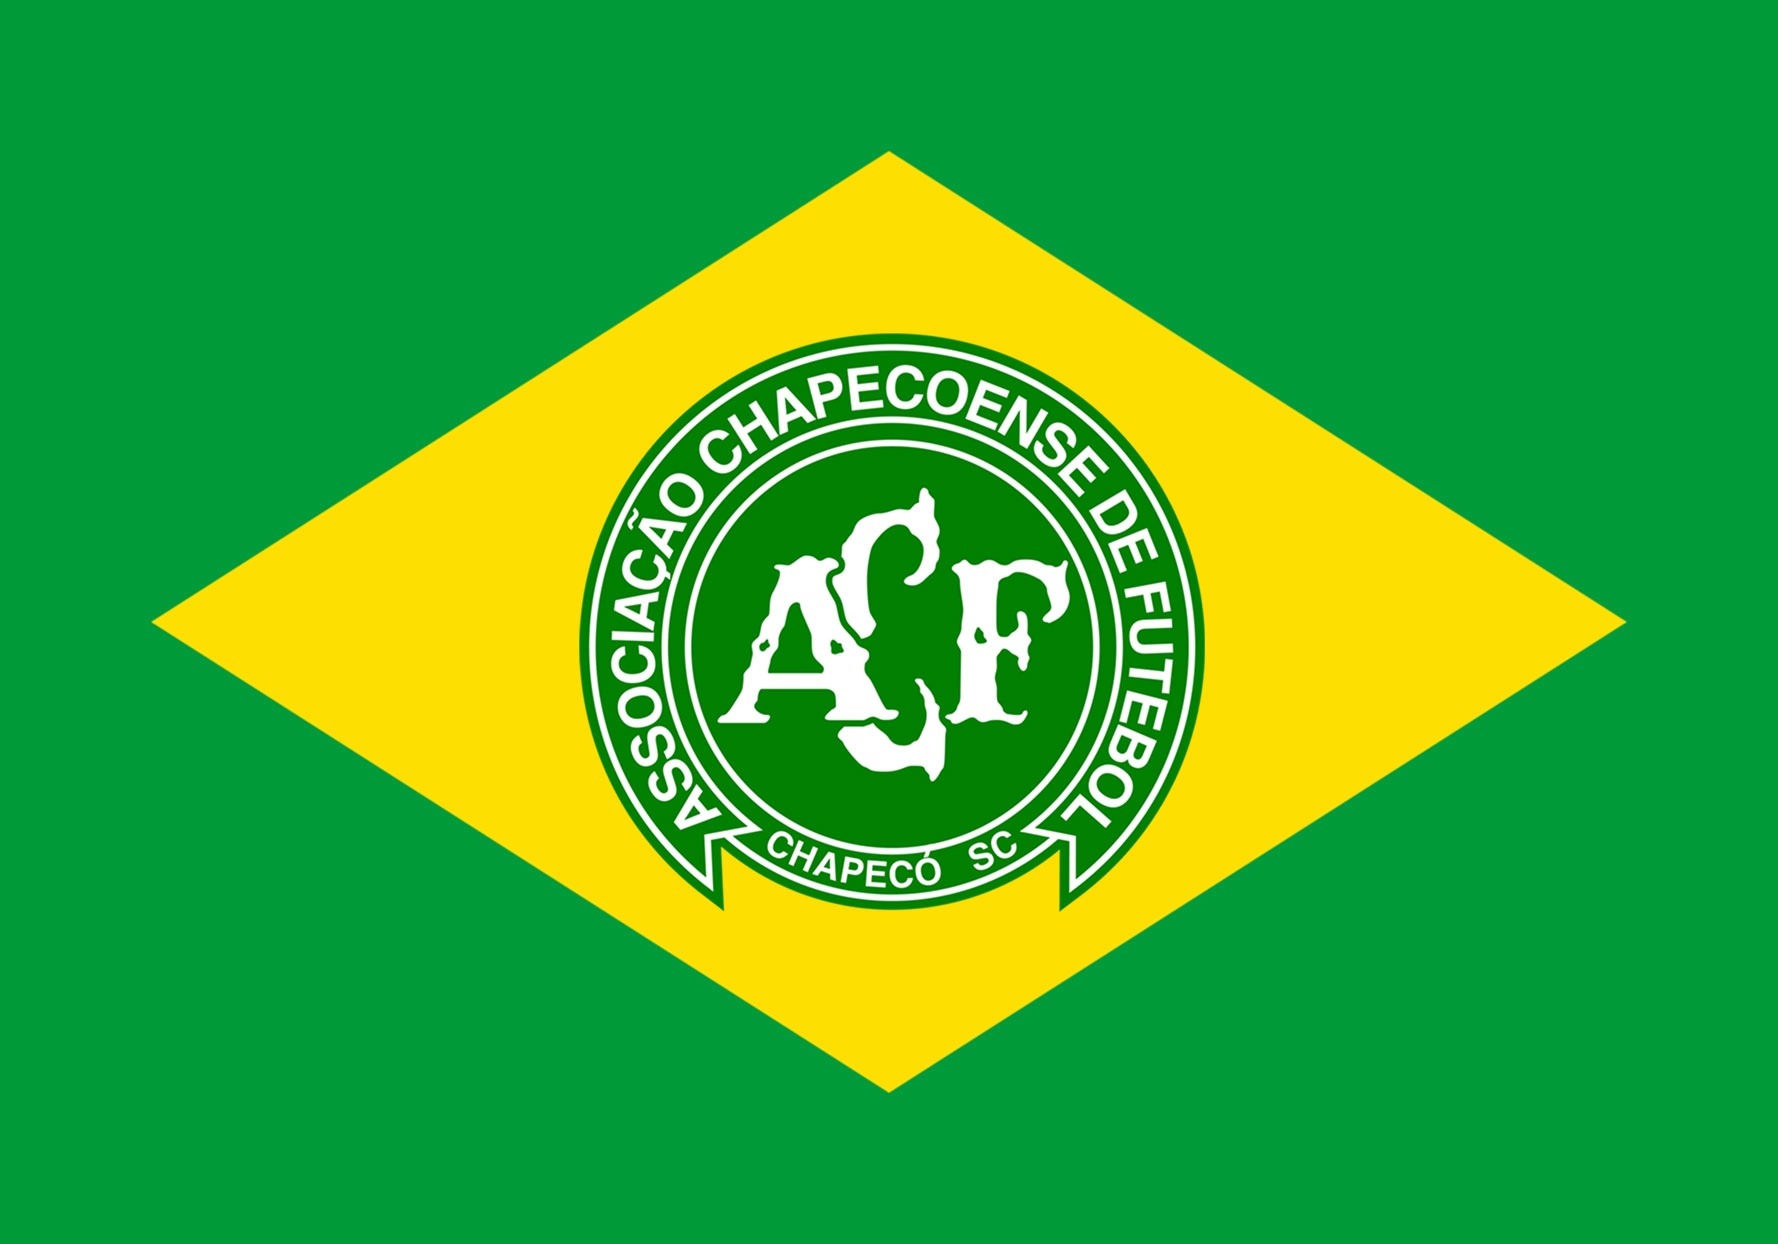 flag_of_brazil